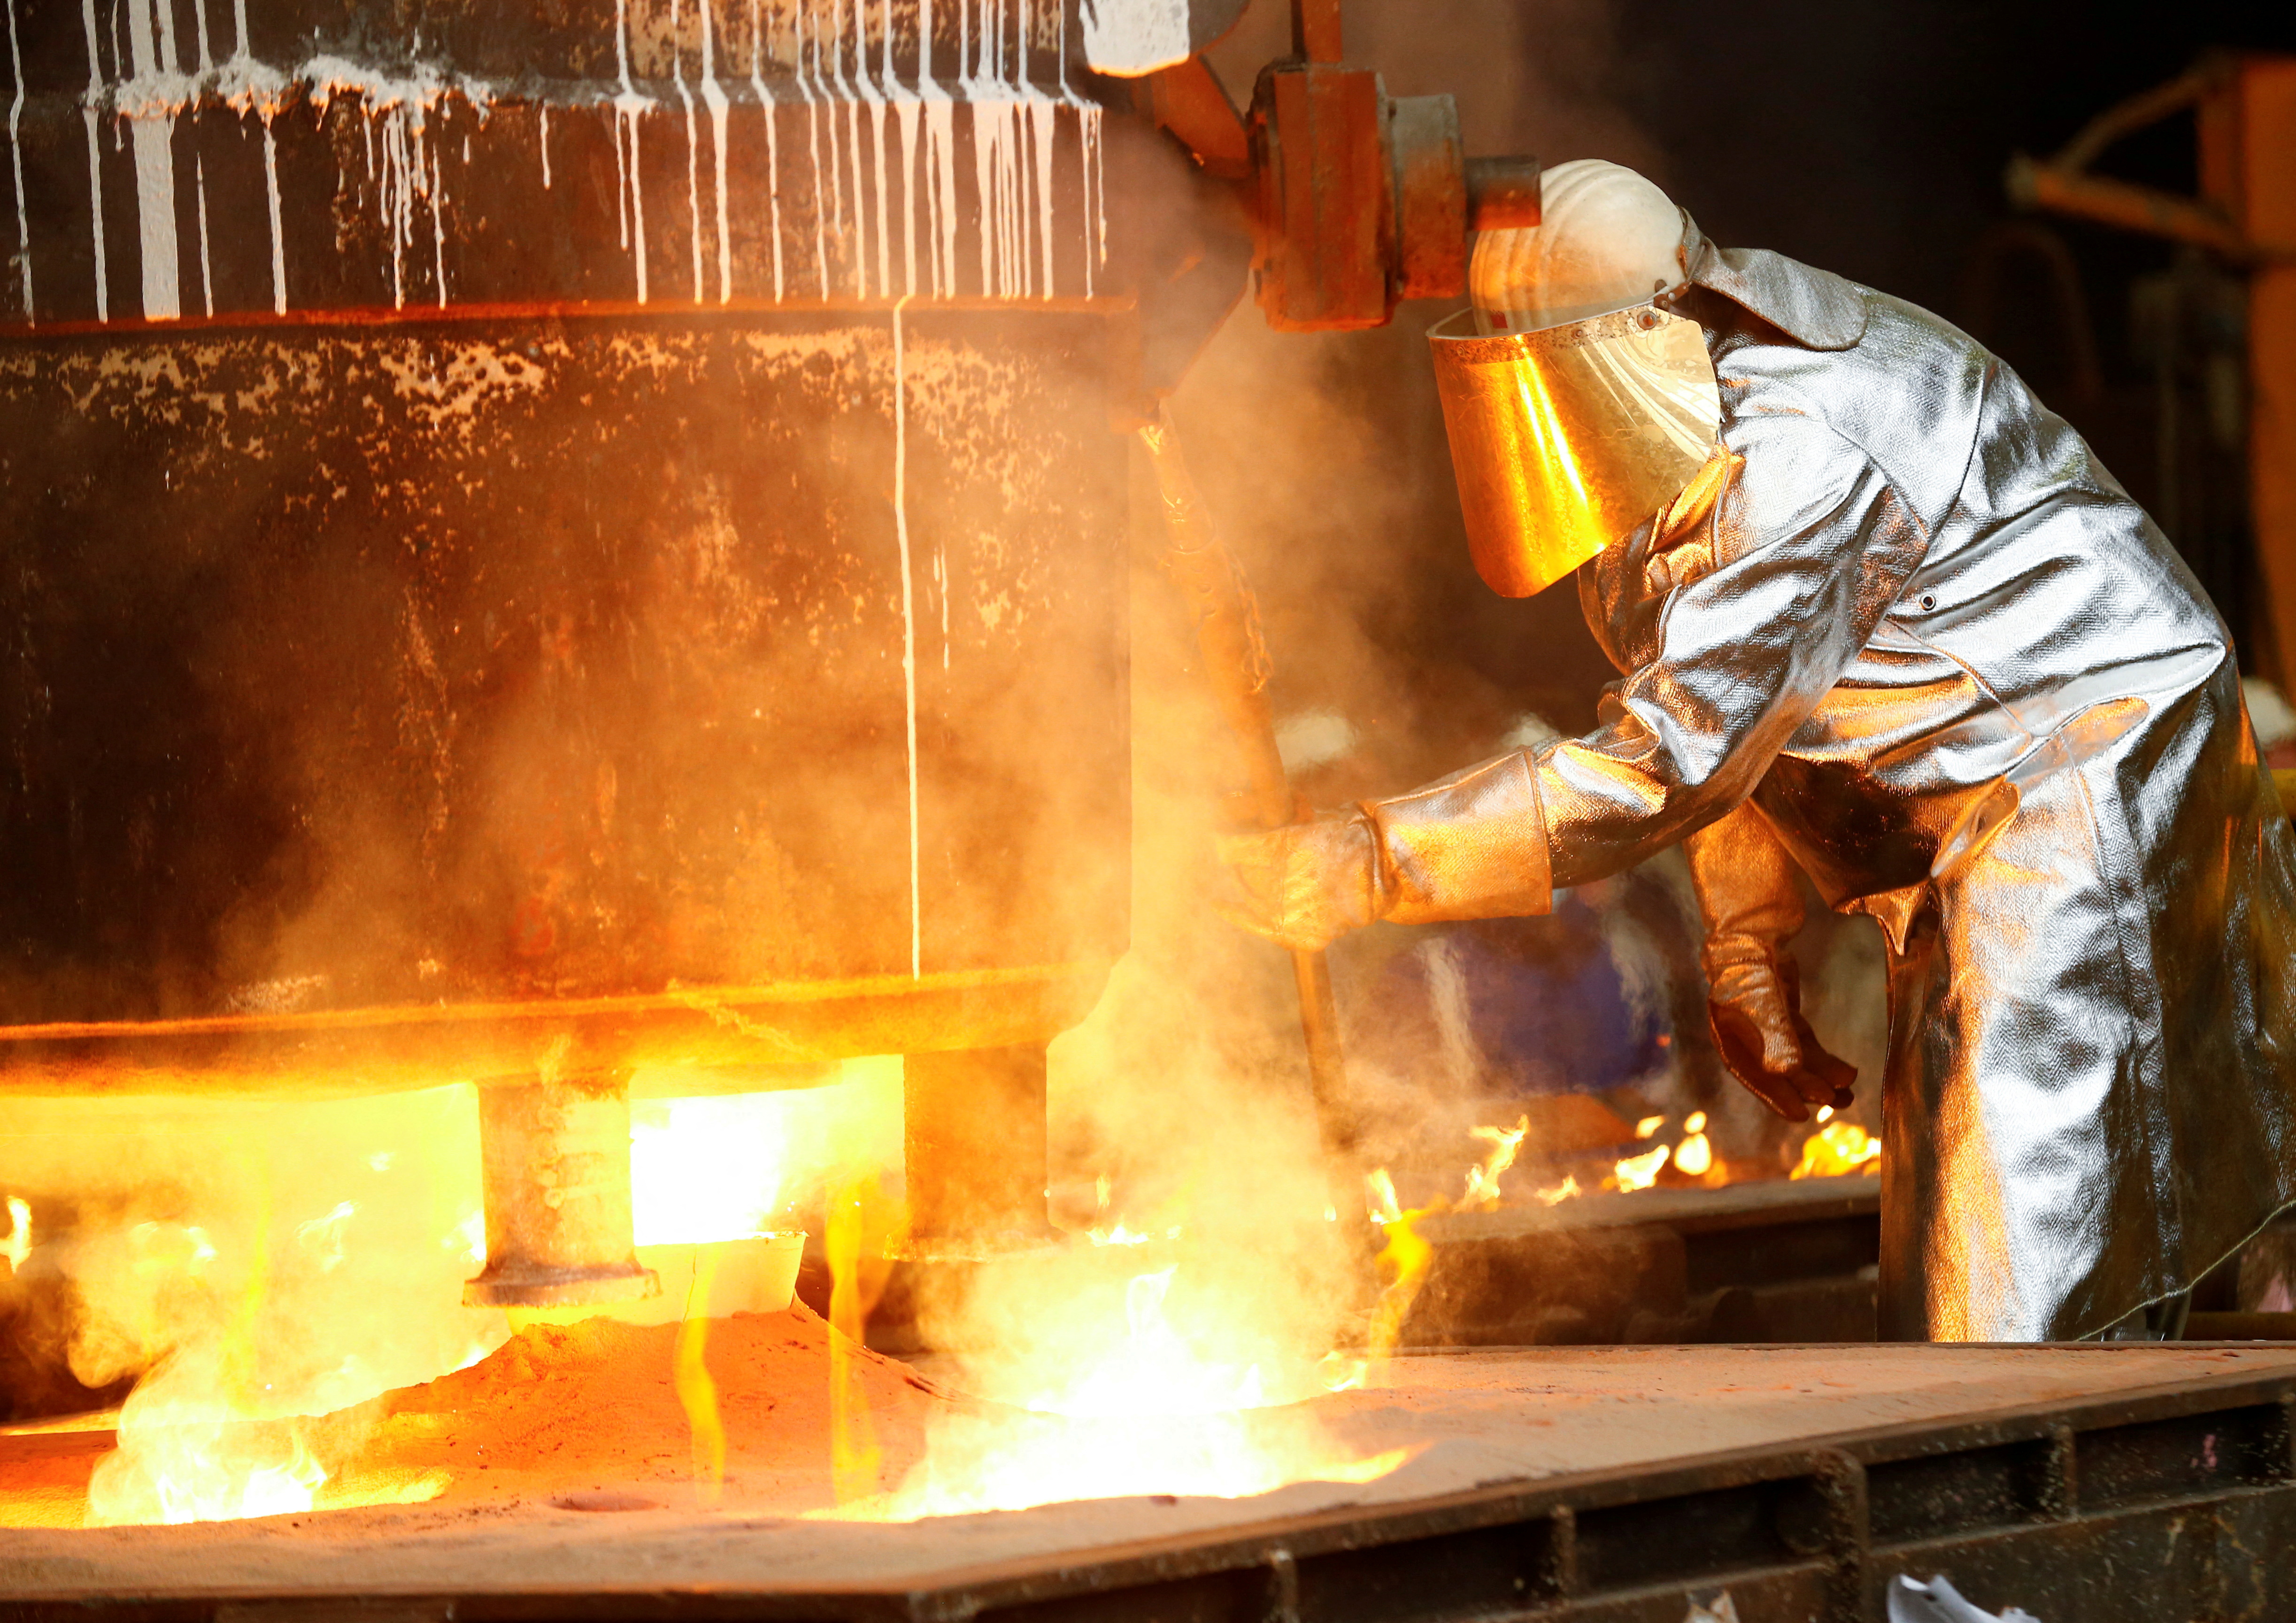 Steel workers at energy-intensive steel casting firm in Muehlheim